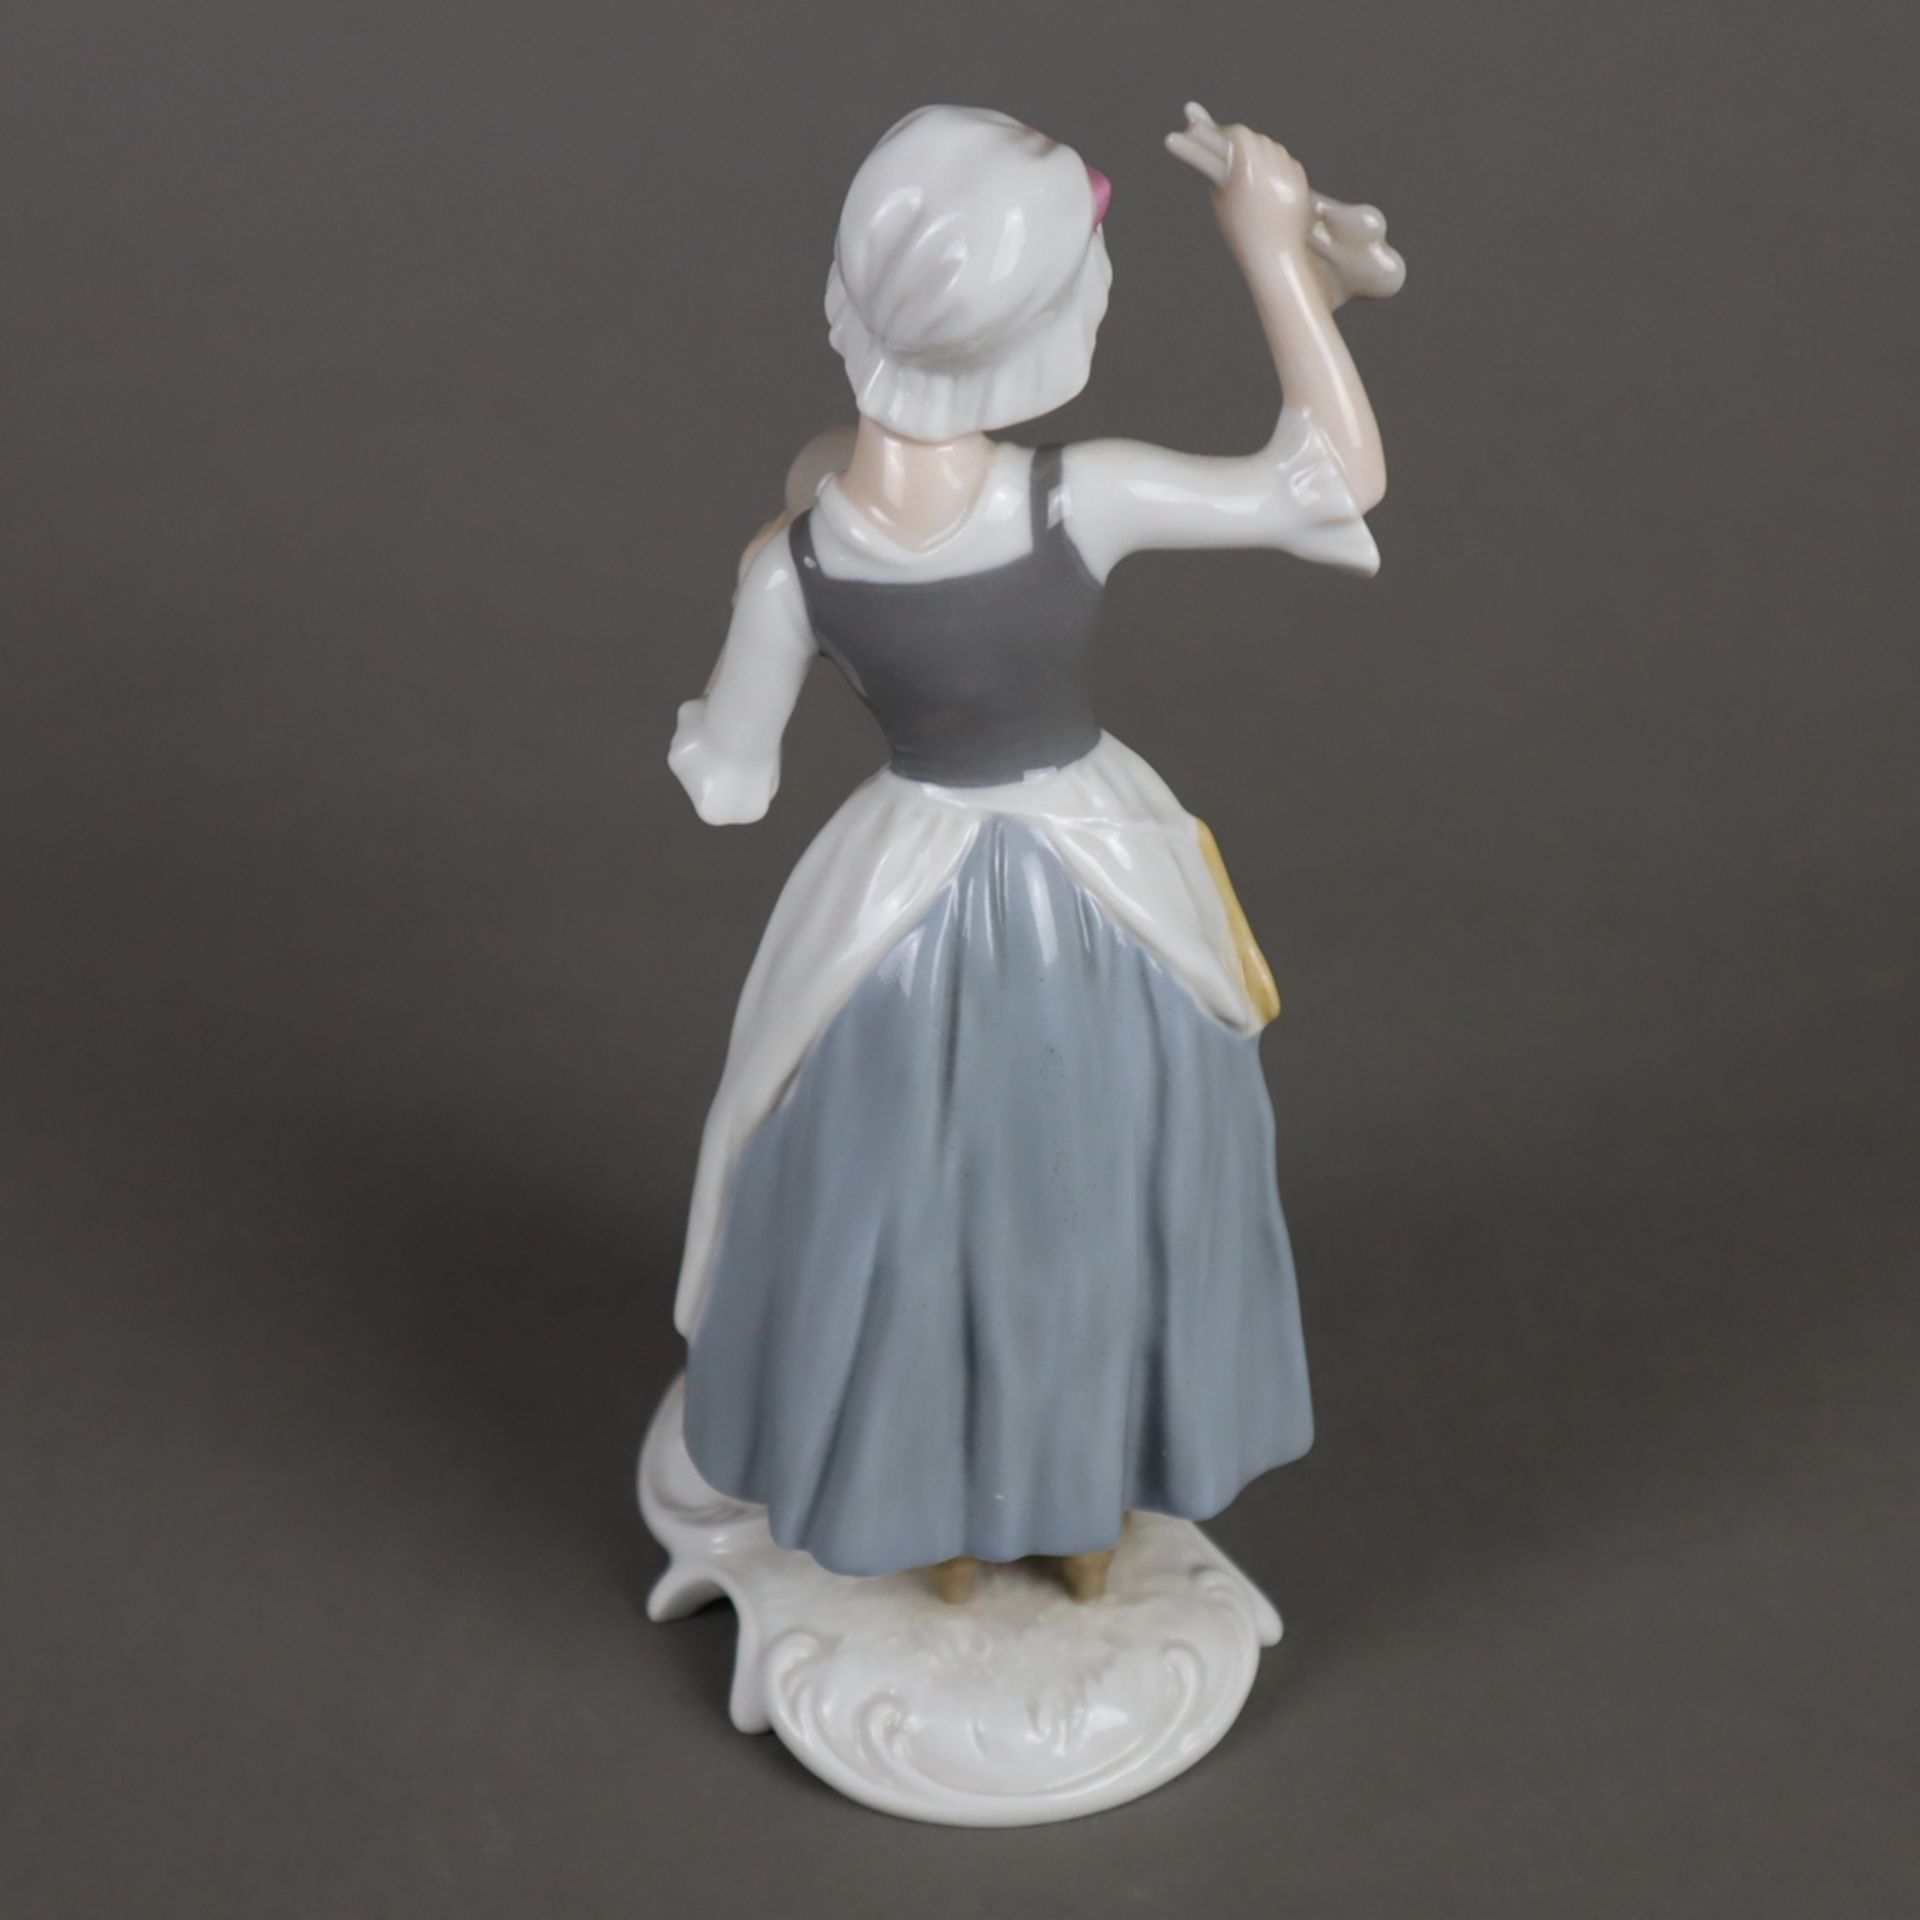 Porzellanfigur "Töpferin" - Goebel, Modellnr. 16 054 aus der Handwerker-Serie, Porzellan, polychrom - Bild 3 aus 7